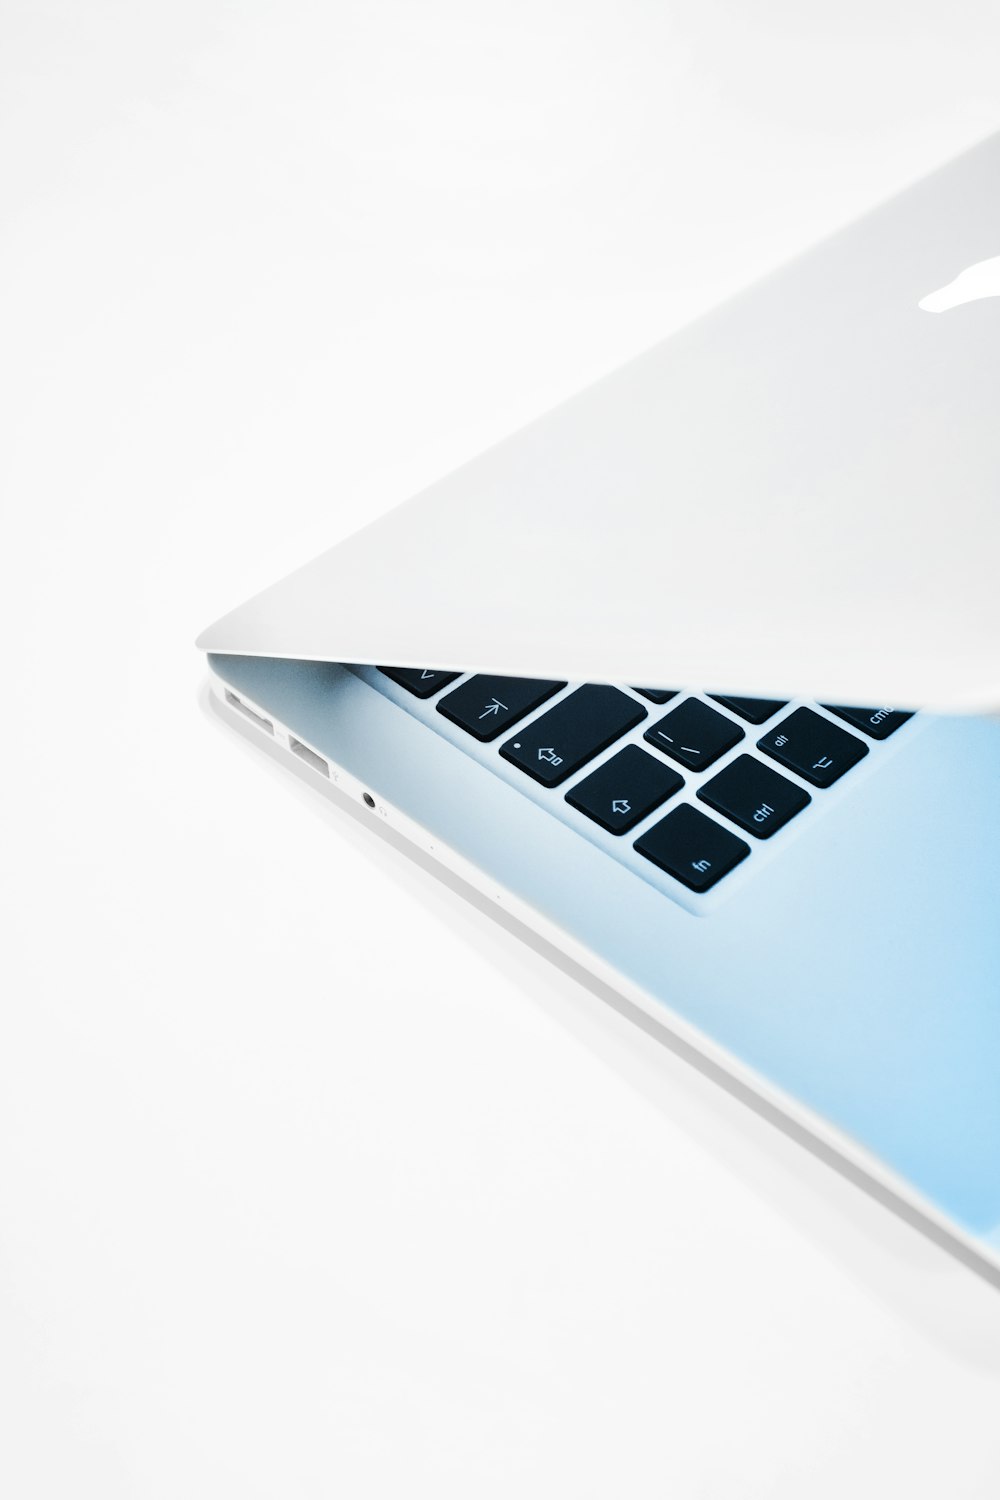 um close up de um laptop em uma superfície branca